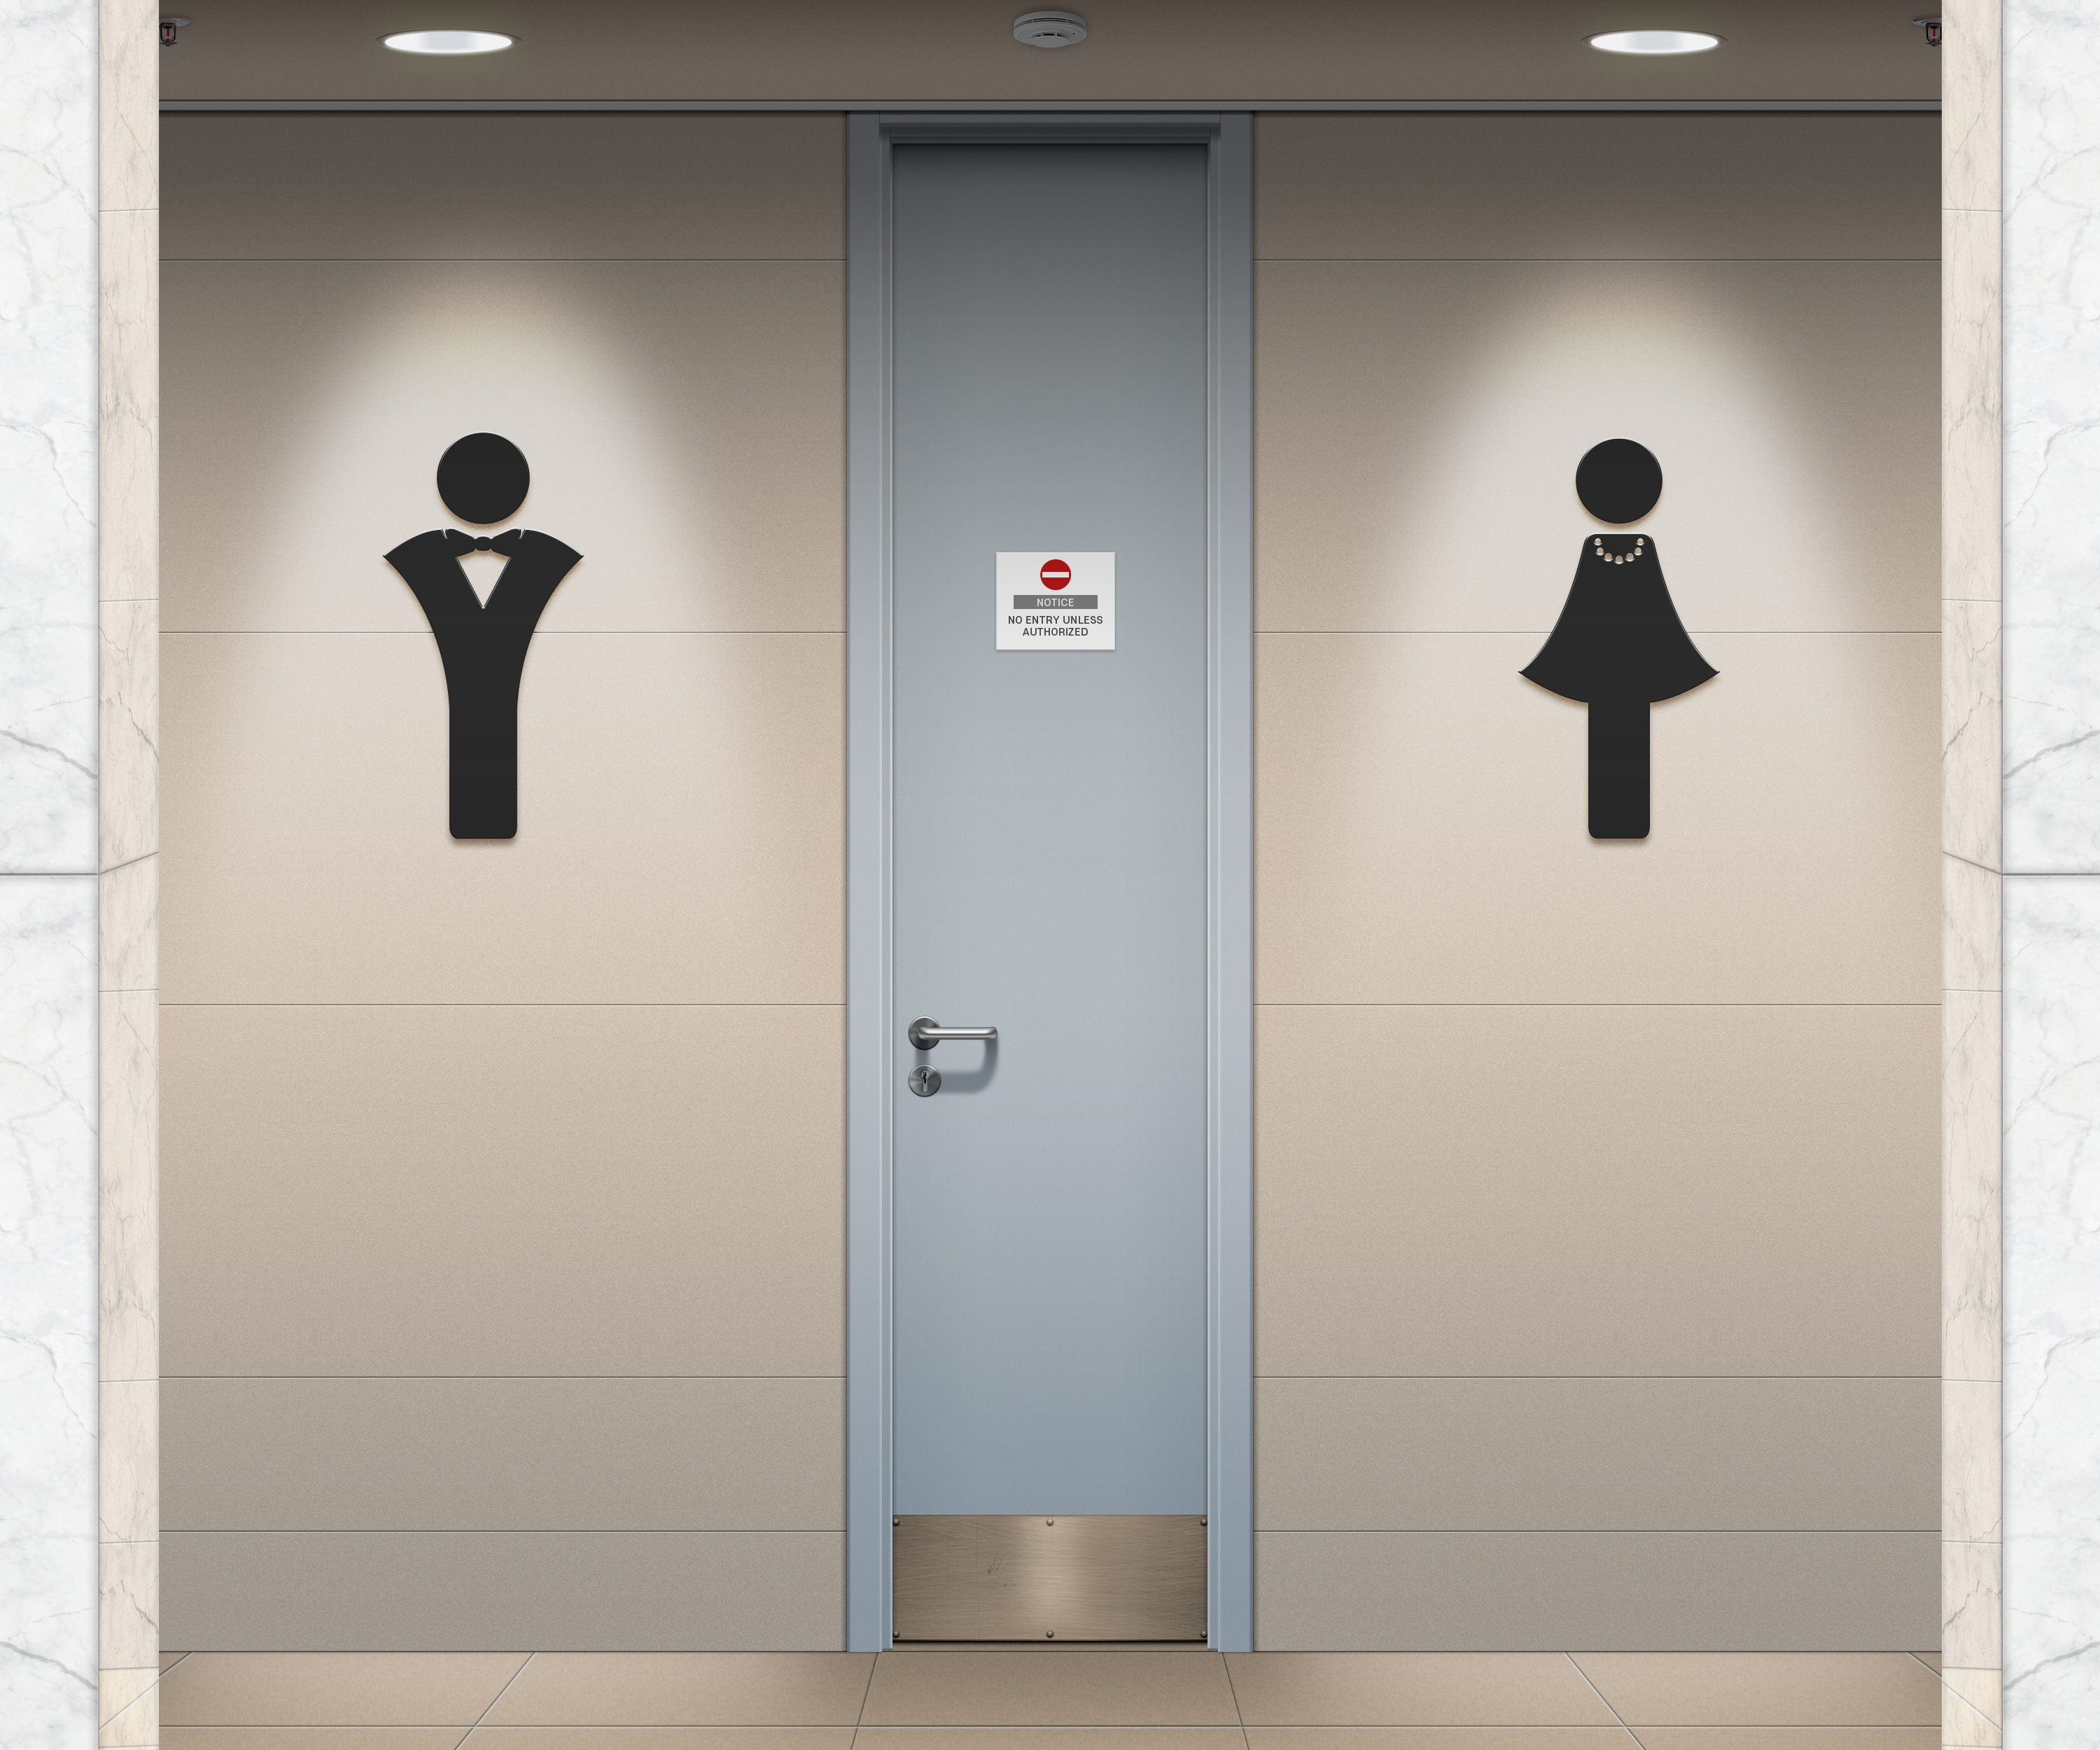 General 3000x2500 toilets public restroom sign digital art